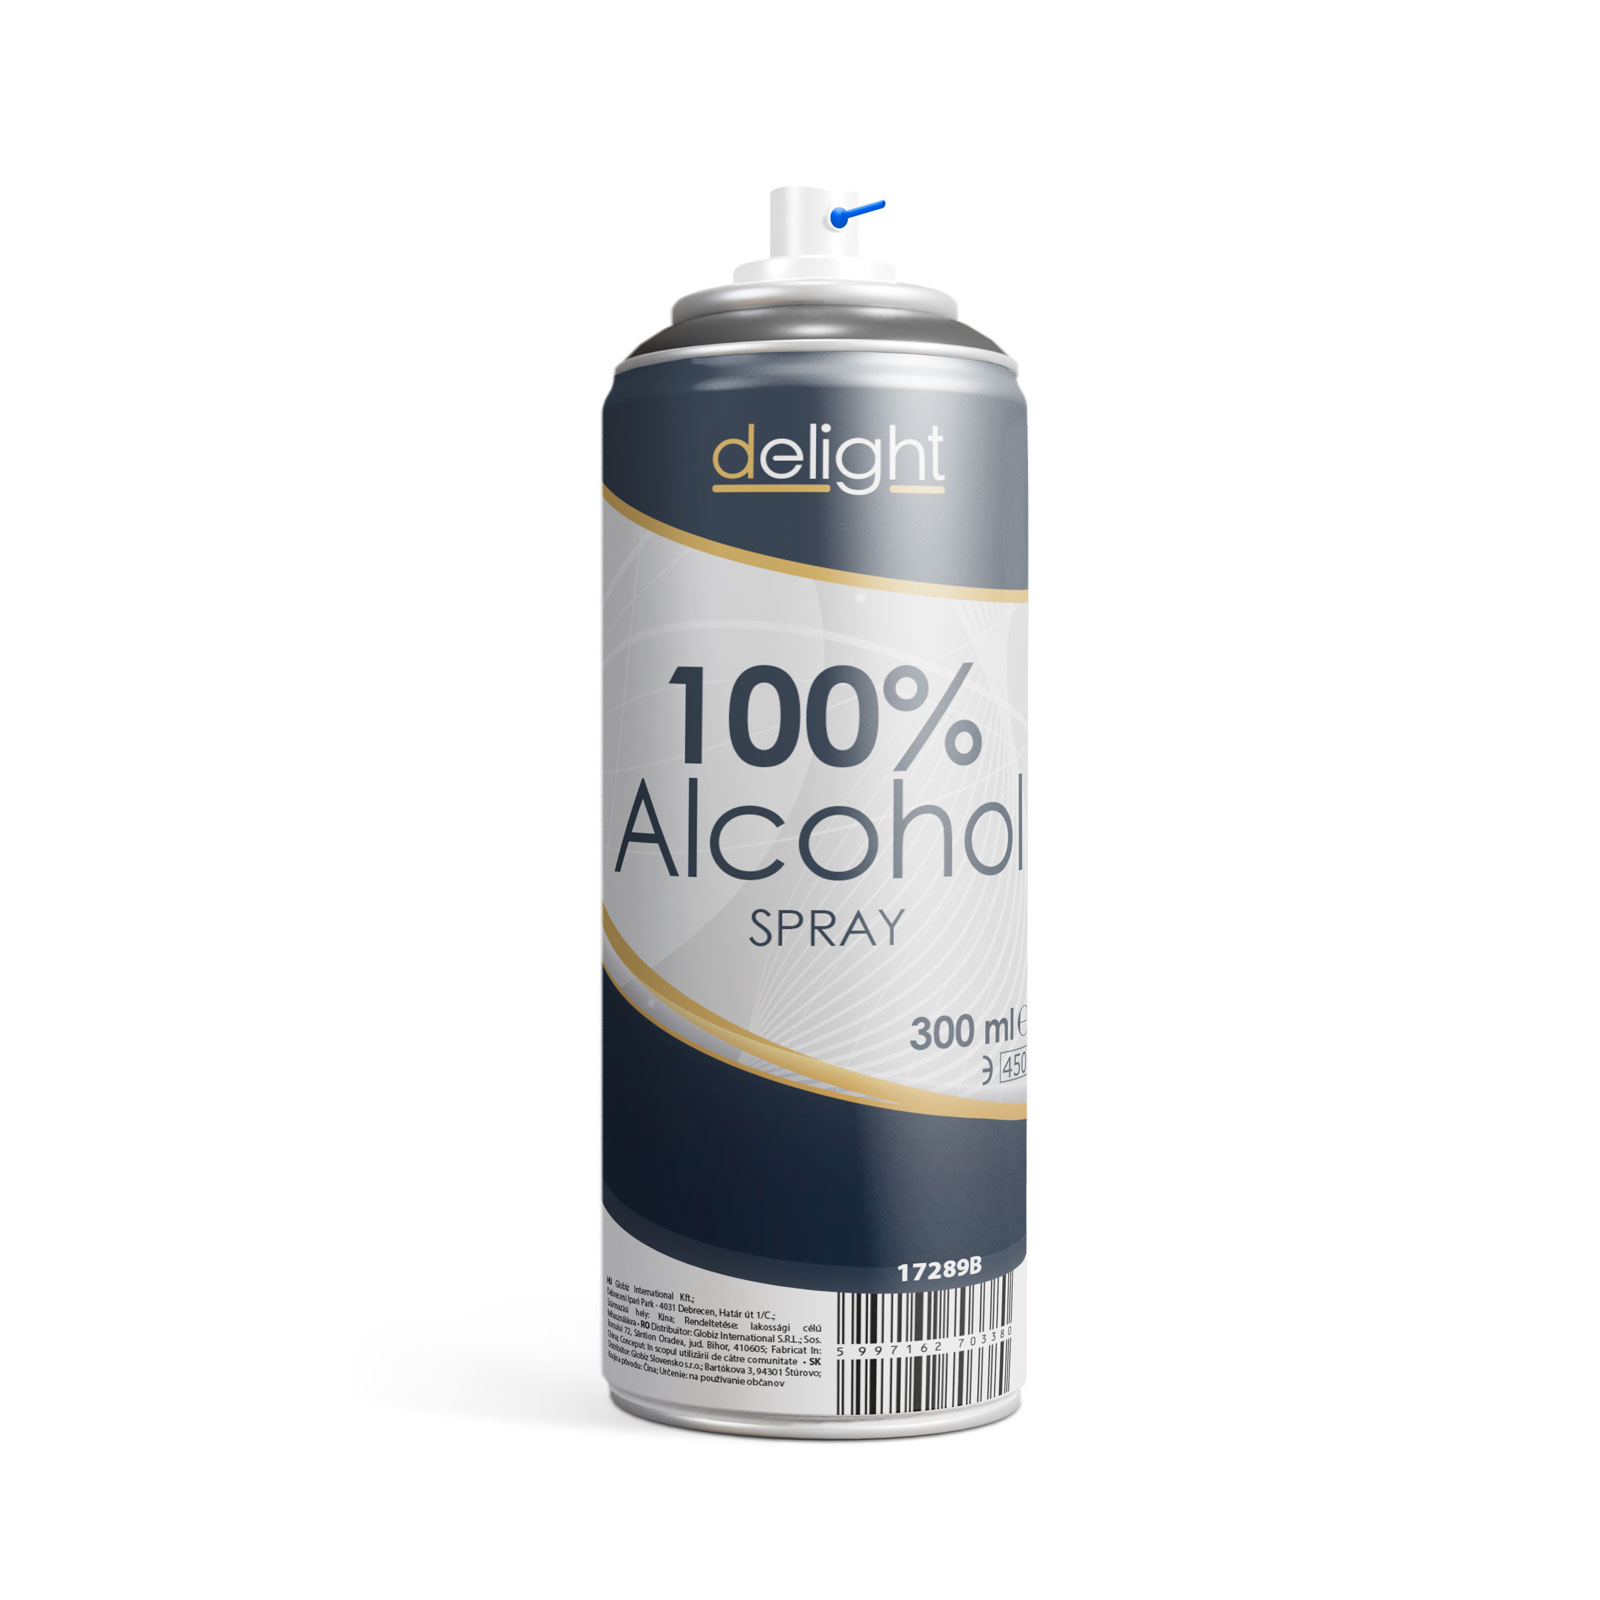 100% Alcohol spray - 300 ml thumb